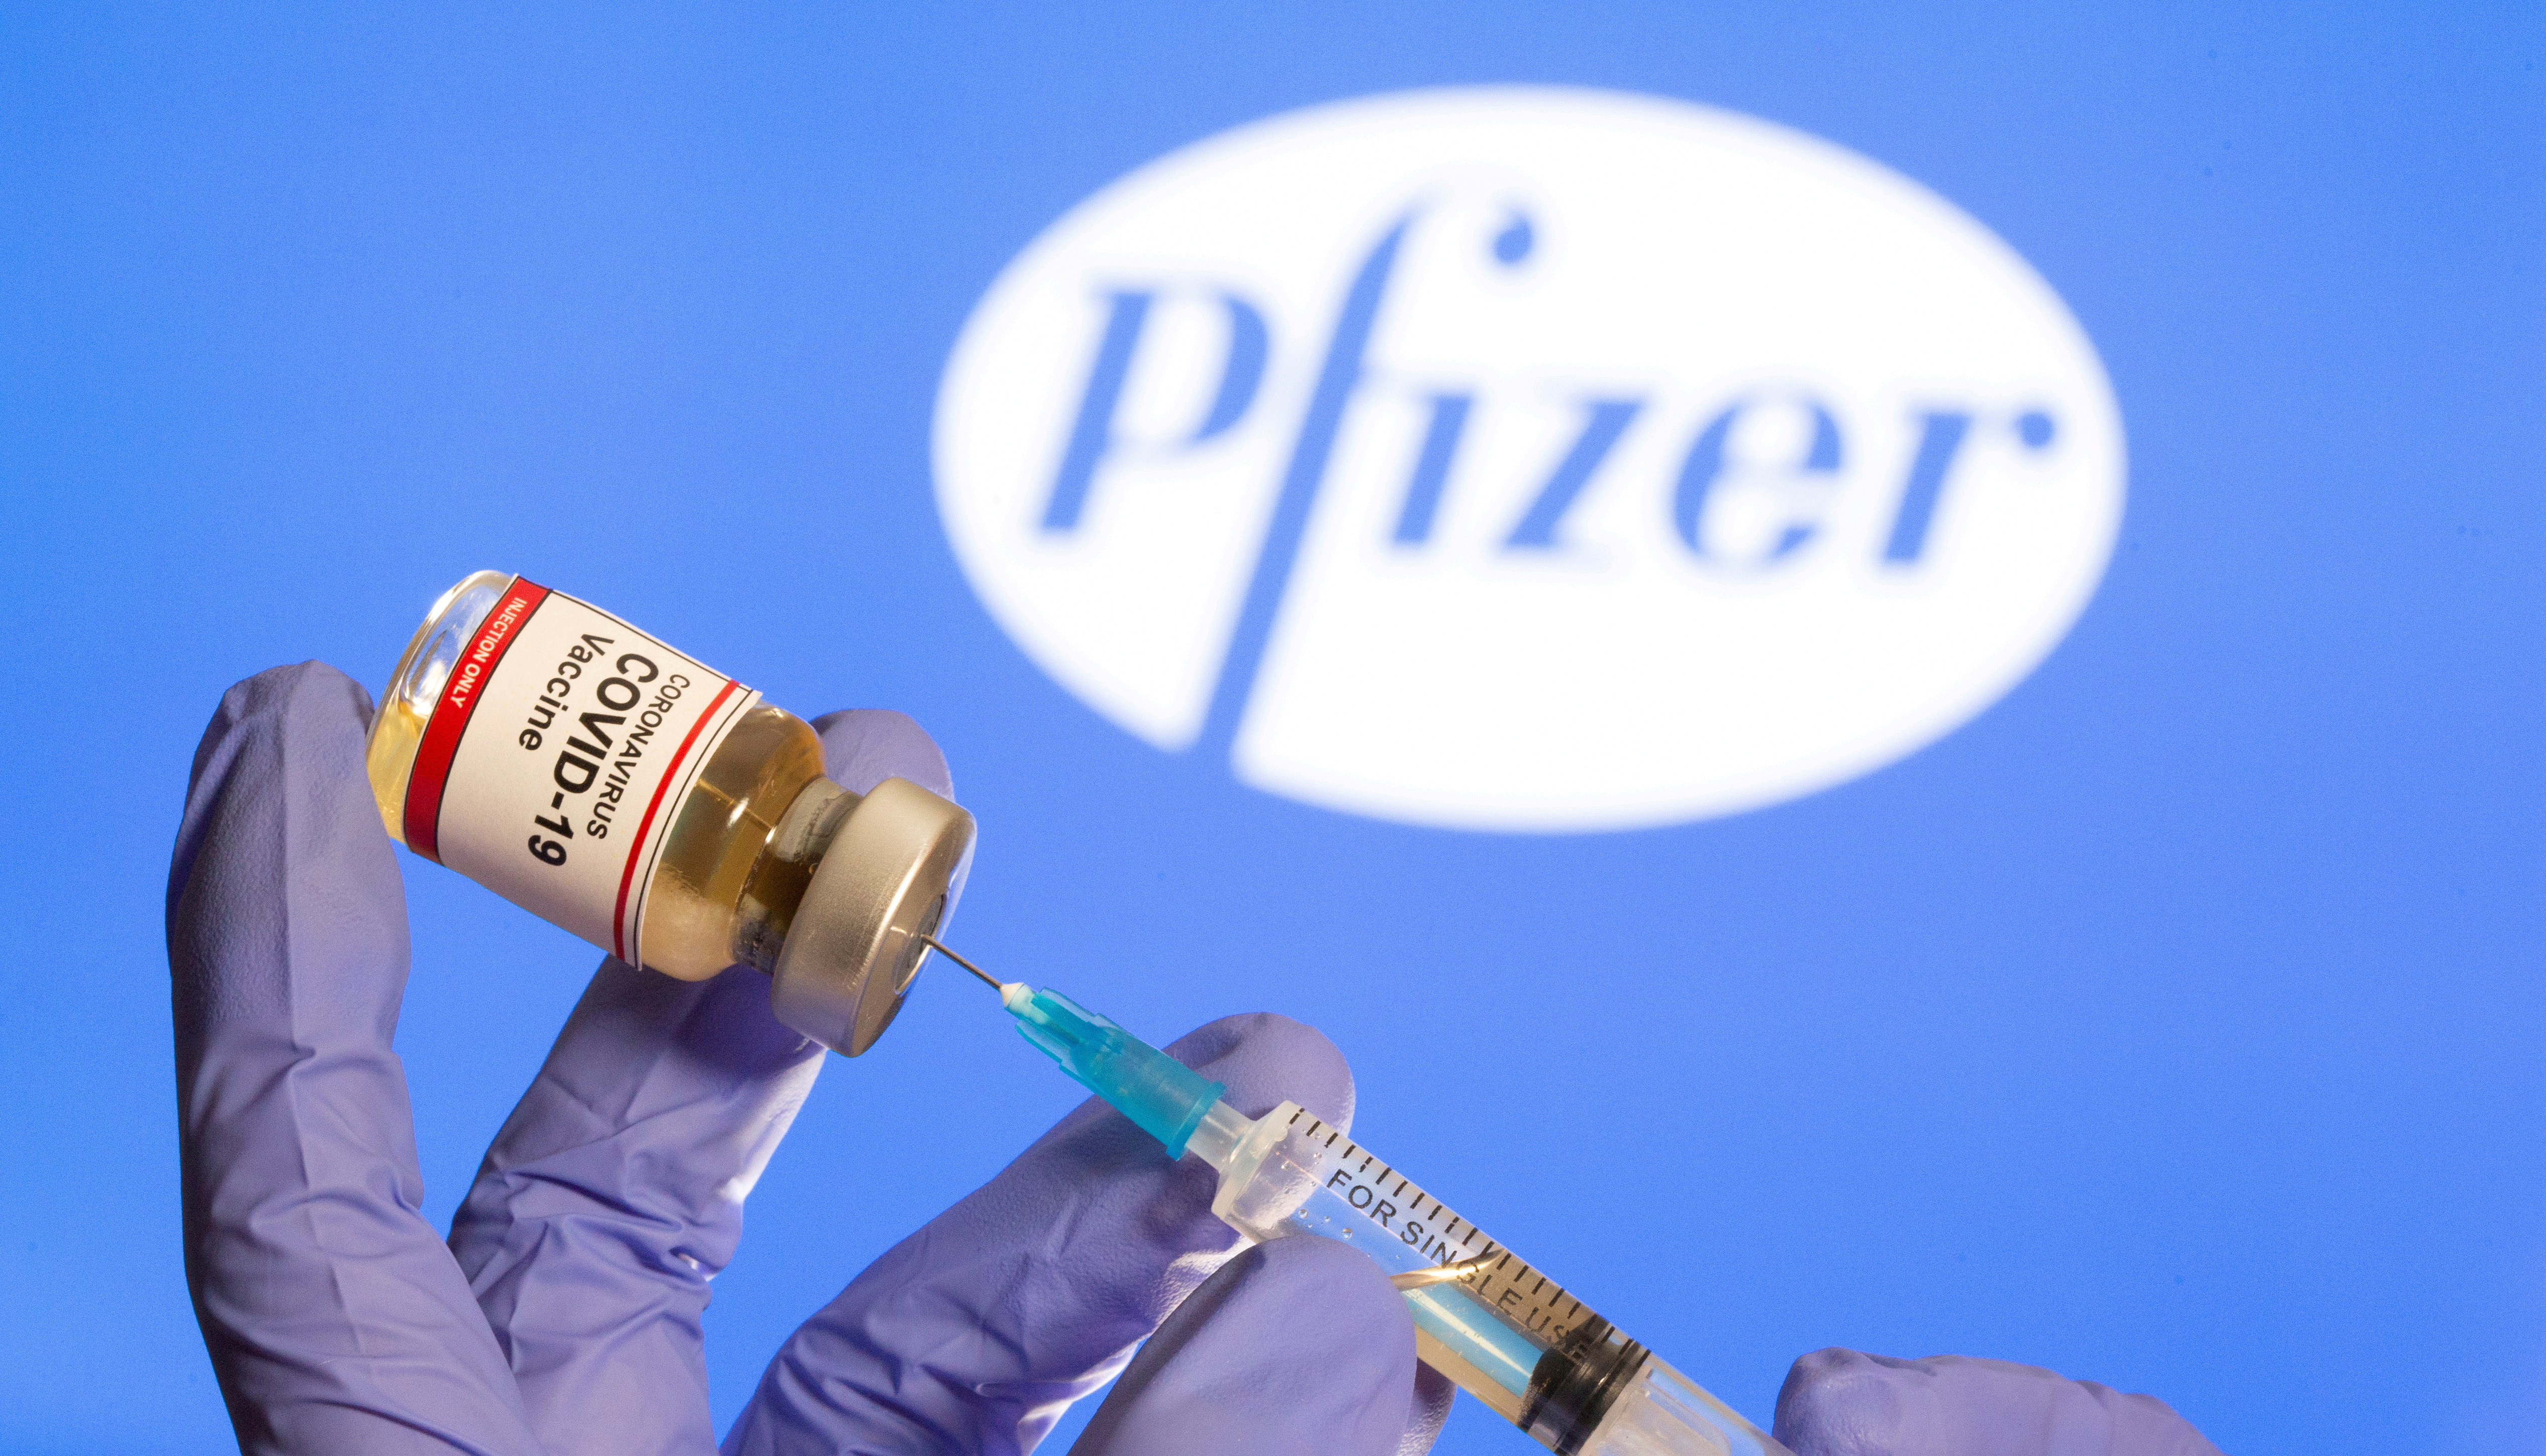 le-royaume-uni-deconseille-le-vaccin-pfizer-aux-personnes-avec-des-antecedents-d-allergies-severes